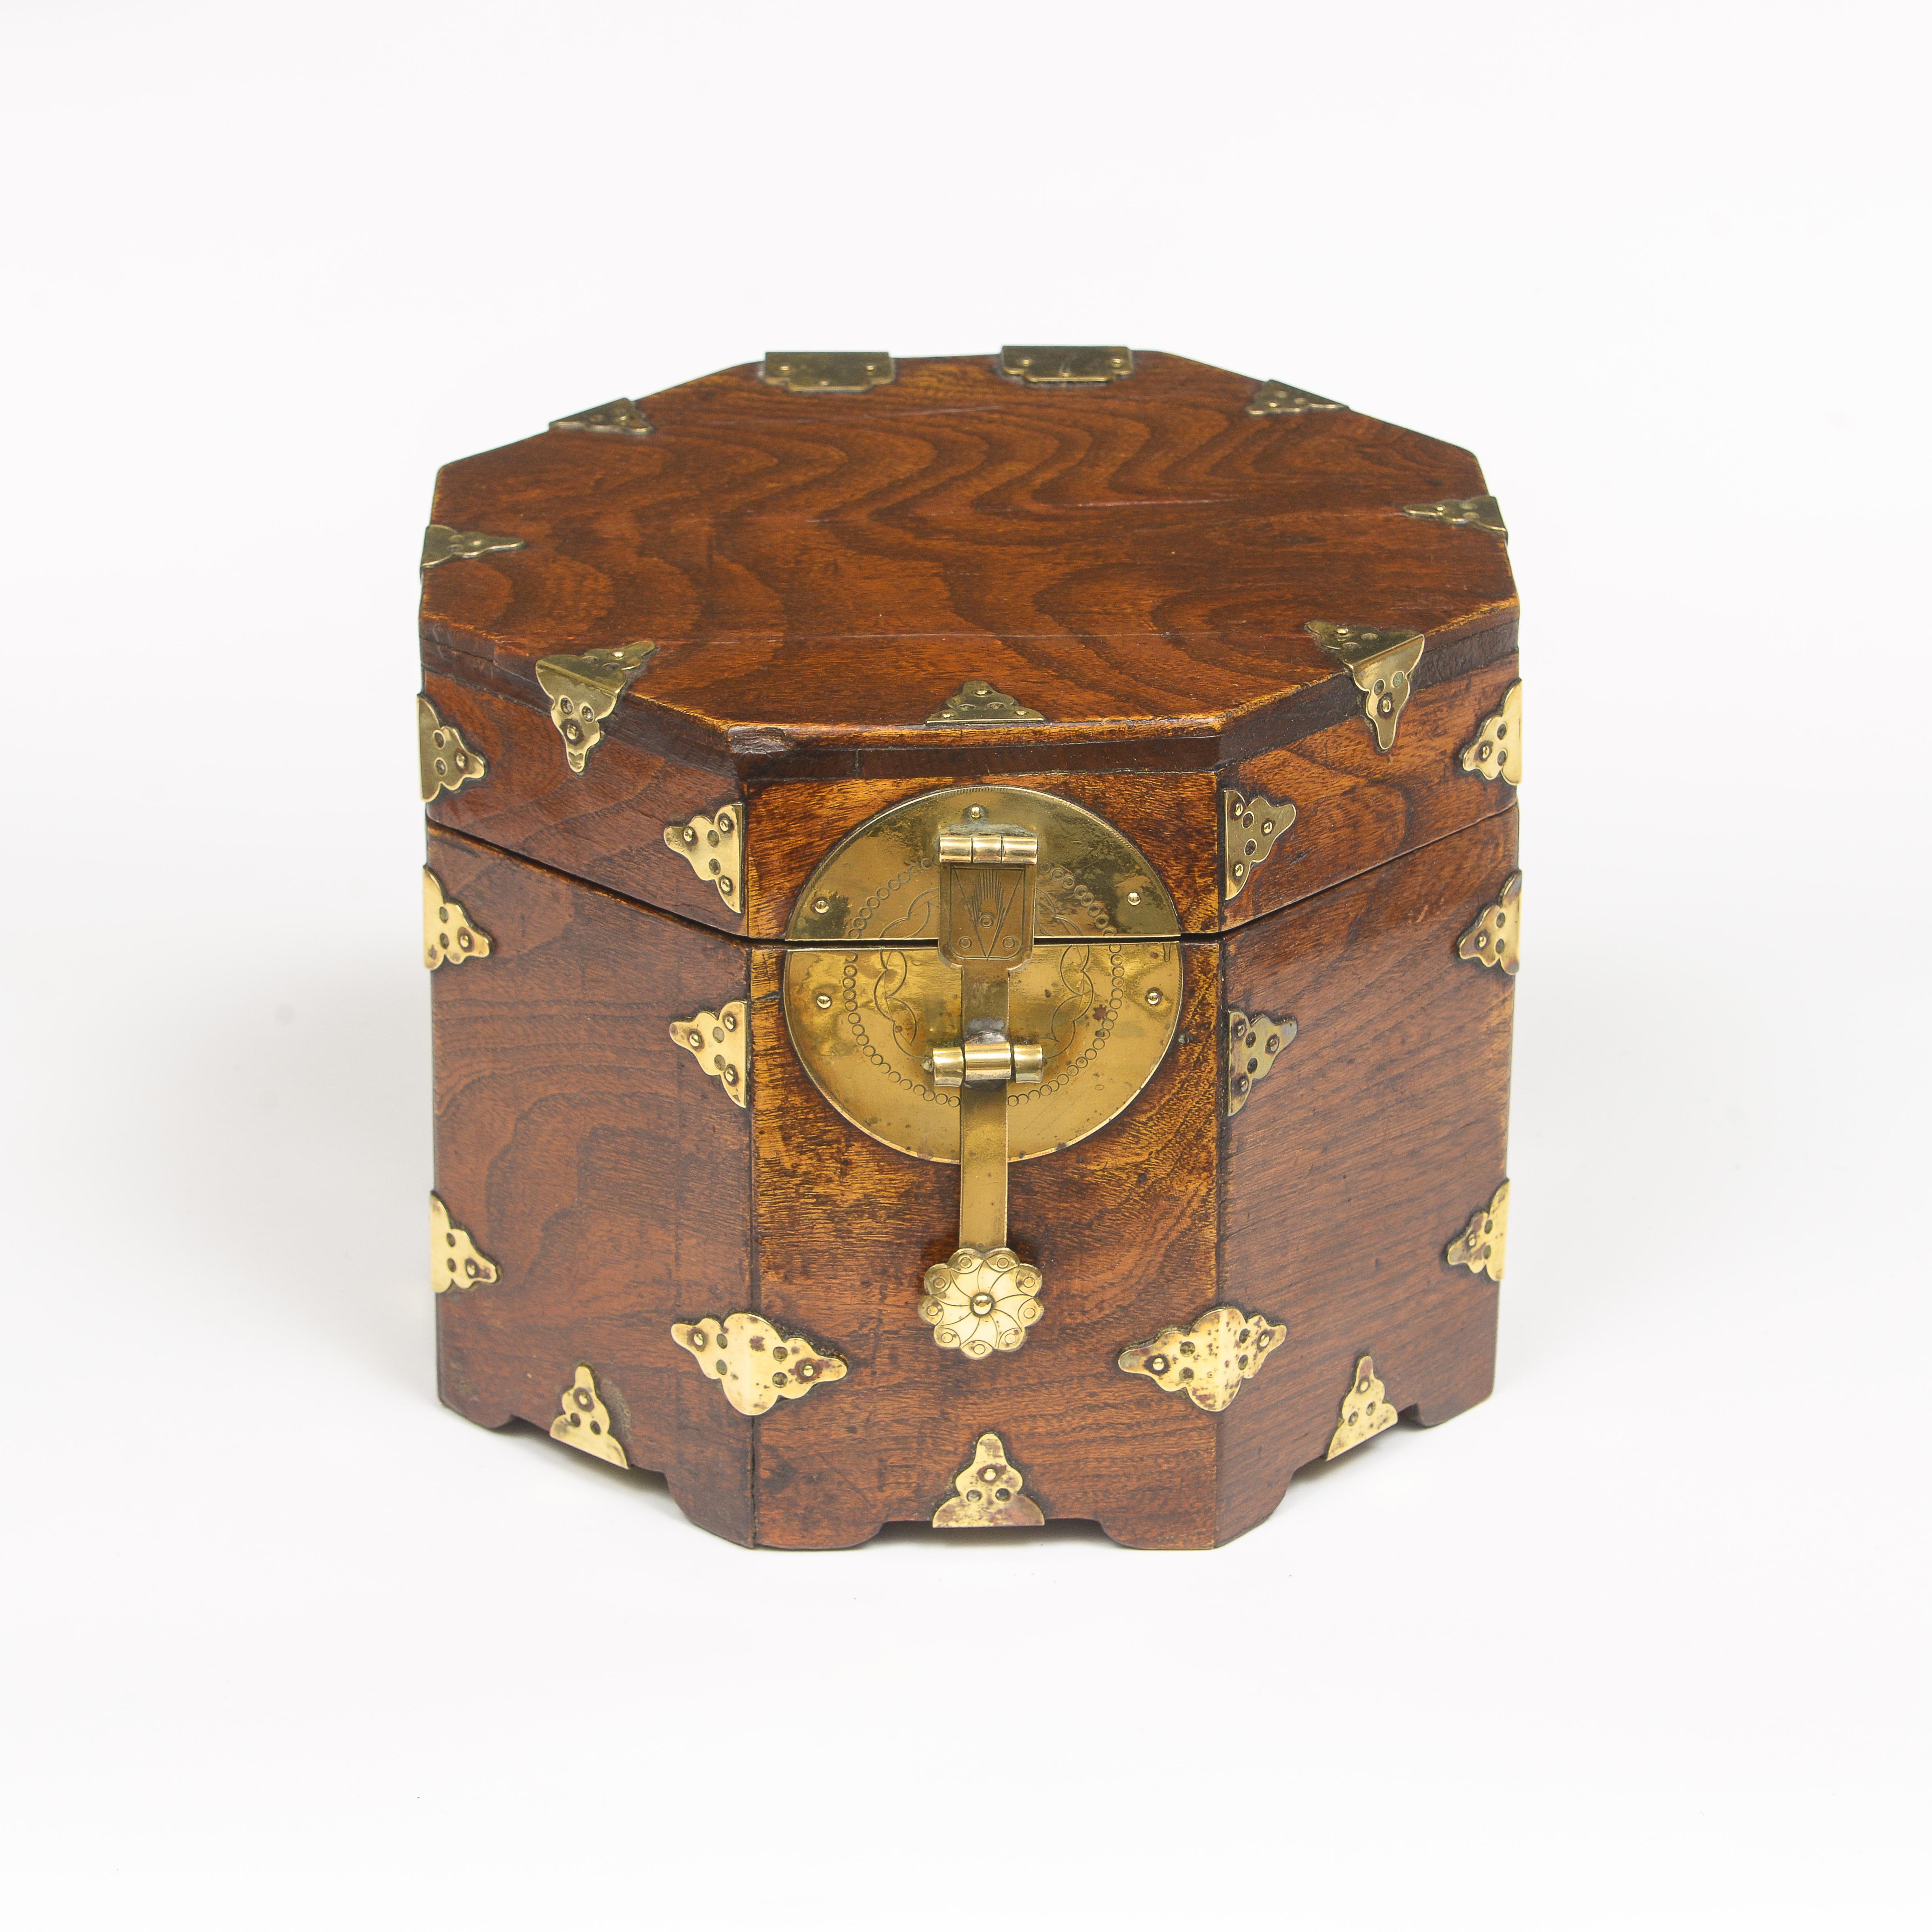 Boîte chinoise octogonale en laiton
Fabriqué en bois de Jumu (orme du sud)
Intérieur recouvert de papier chinois